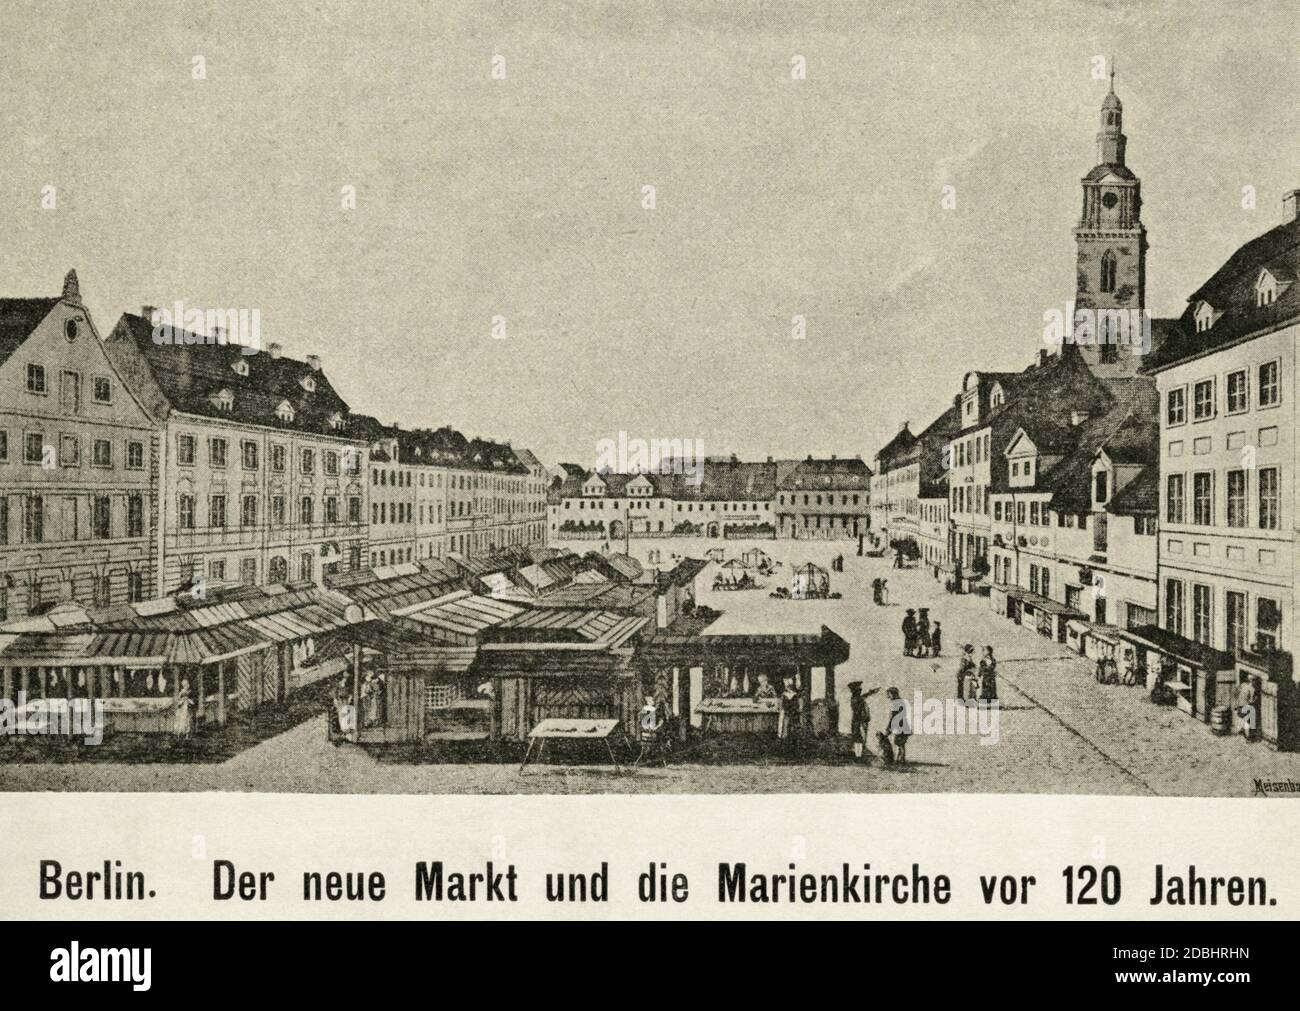 Der Stich zeigt den Neuen Markt und die Marienkirche (rechts) in Berlin-Mitte. Undatierte Aufnahme, wahrscheinlich um 1800 aufgenommen. Stockfoto